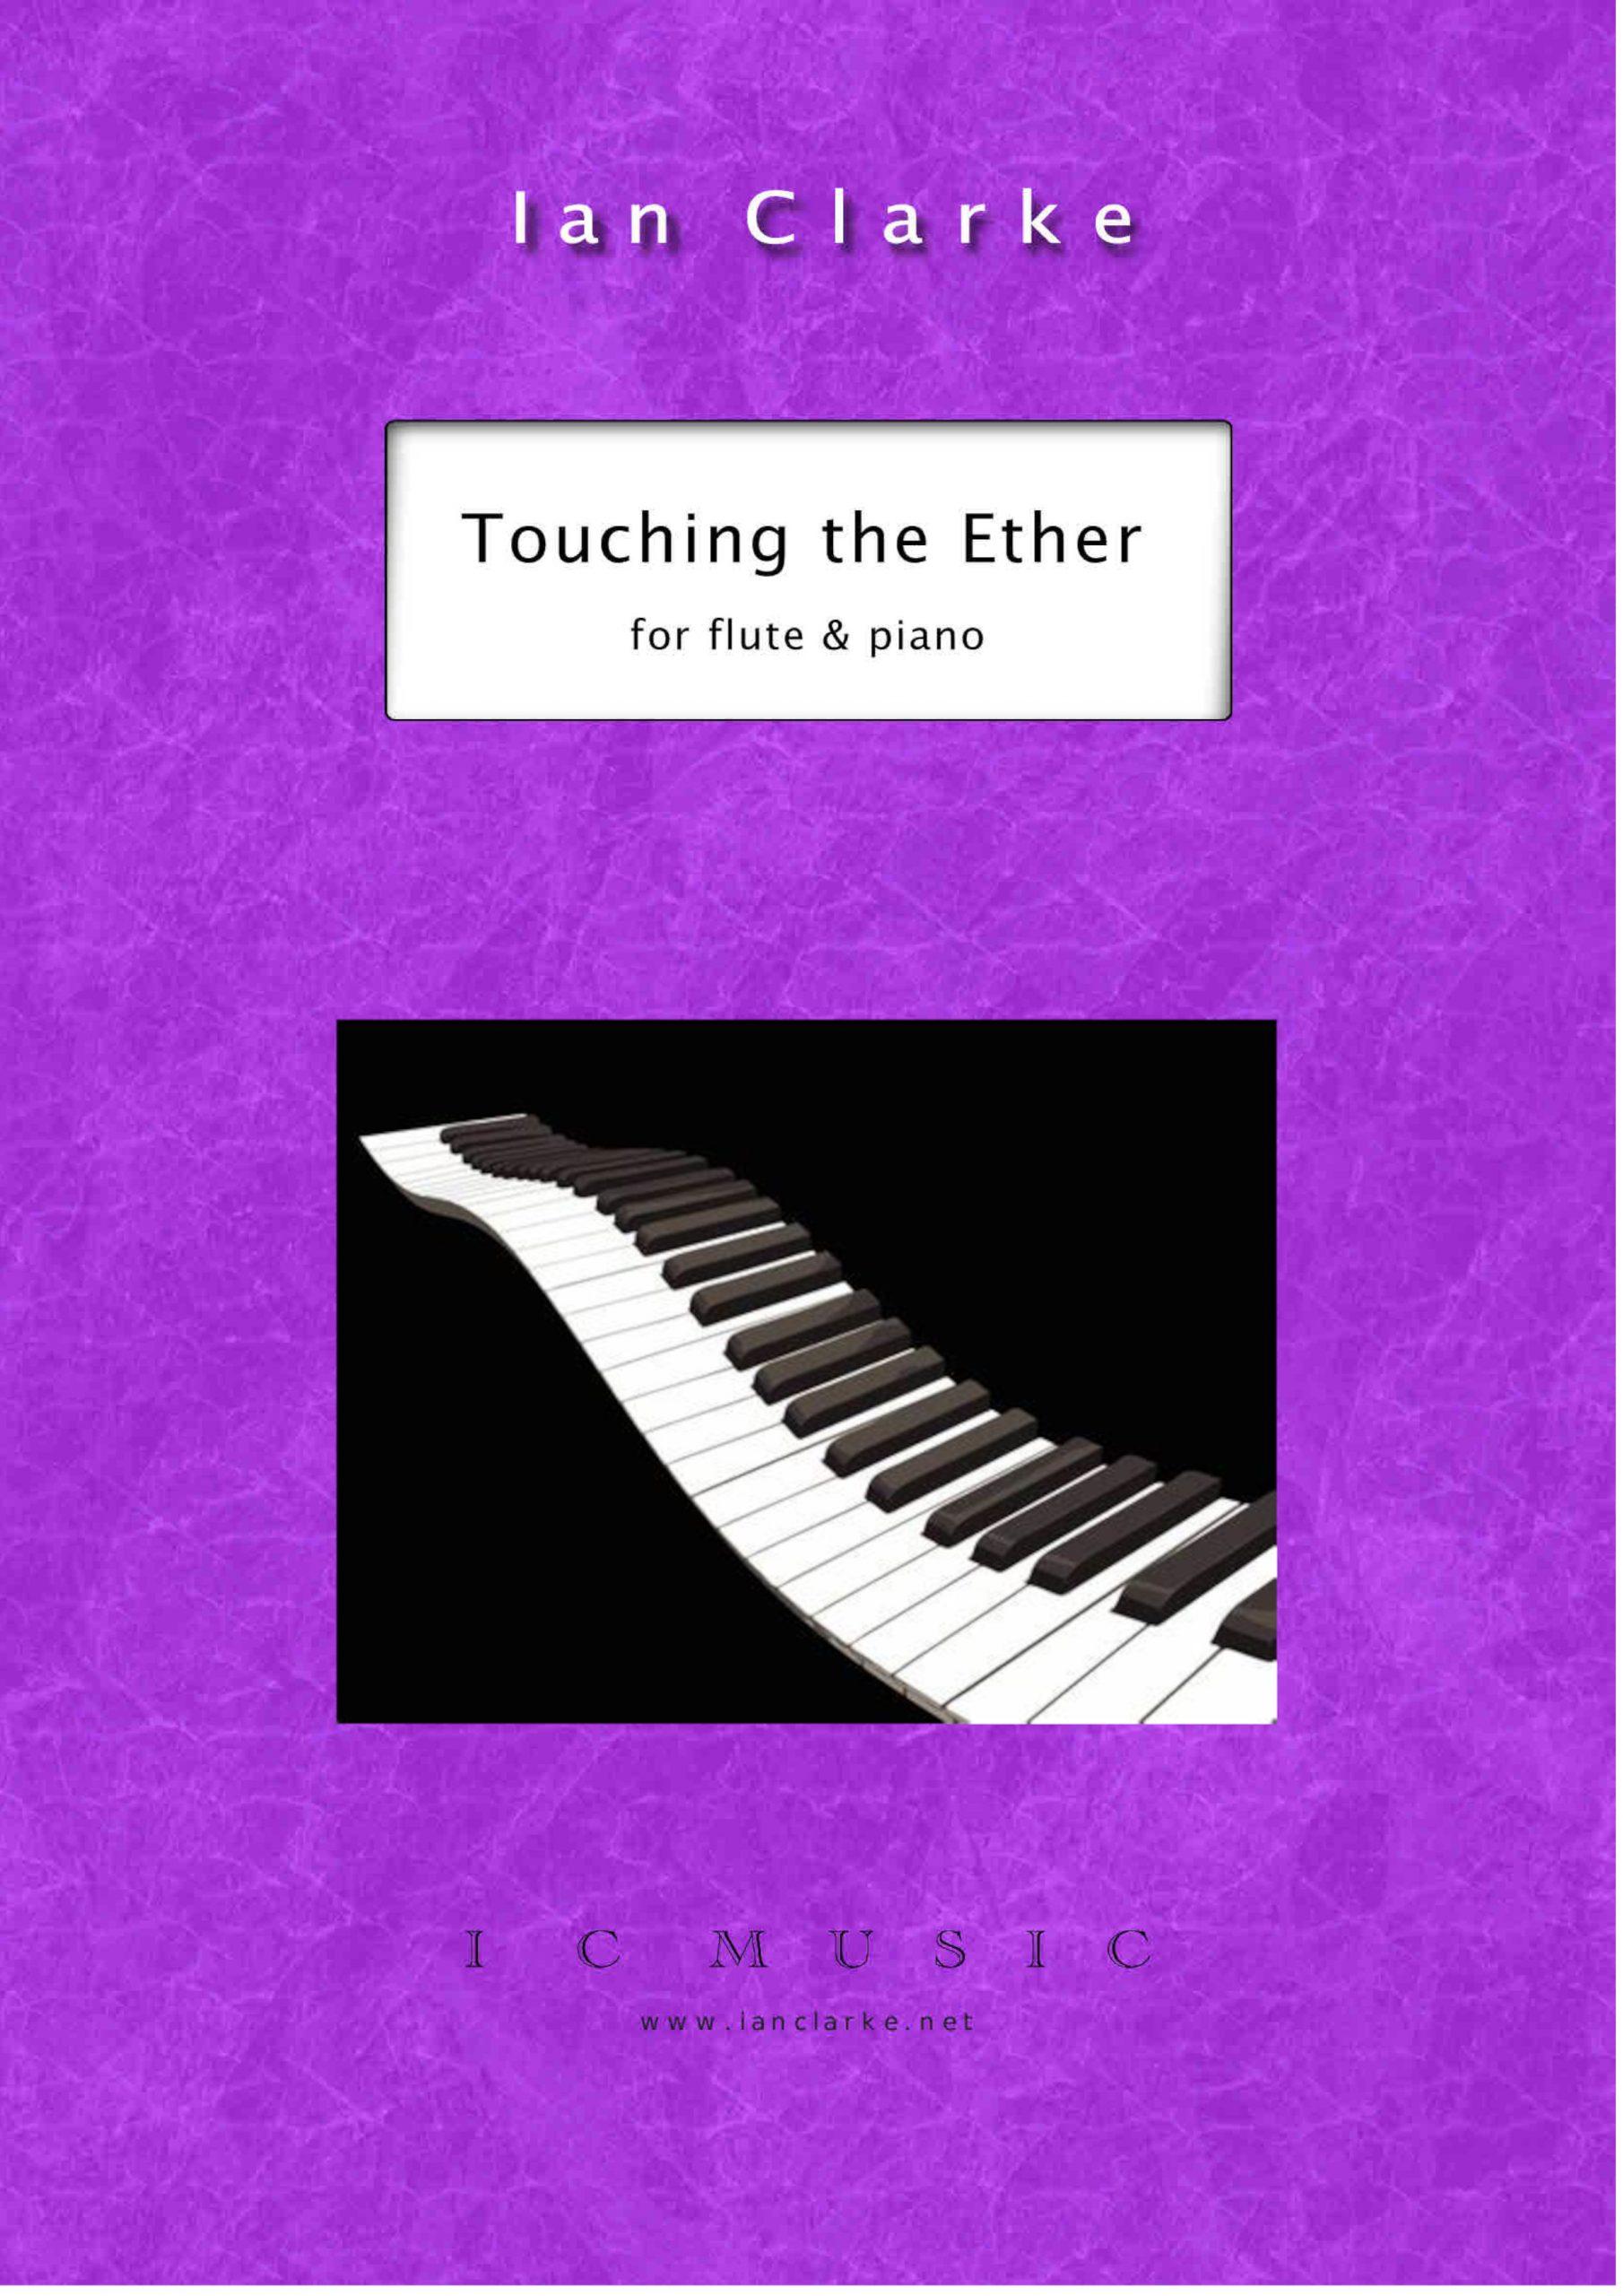 Touching The Ether - Ian Clarke | Suono Flauti